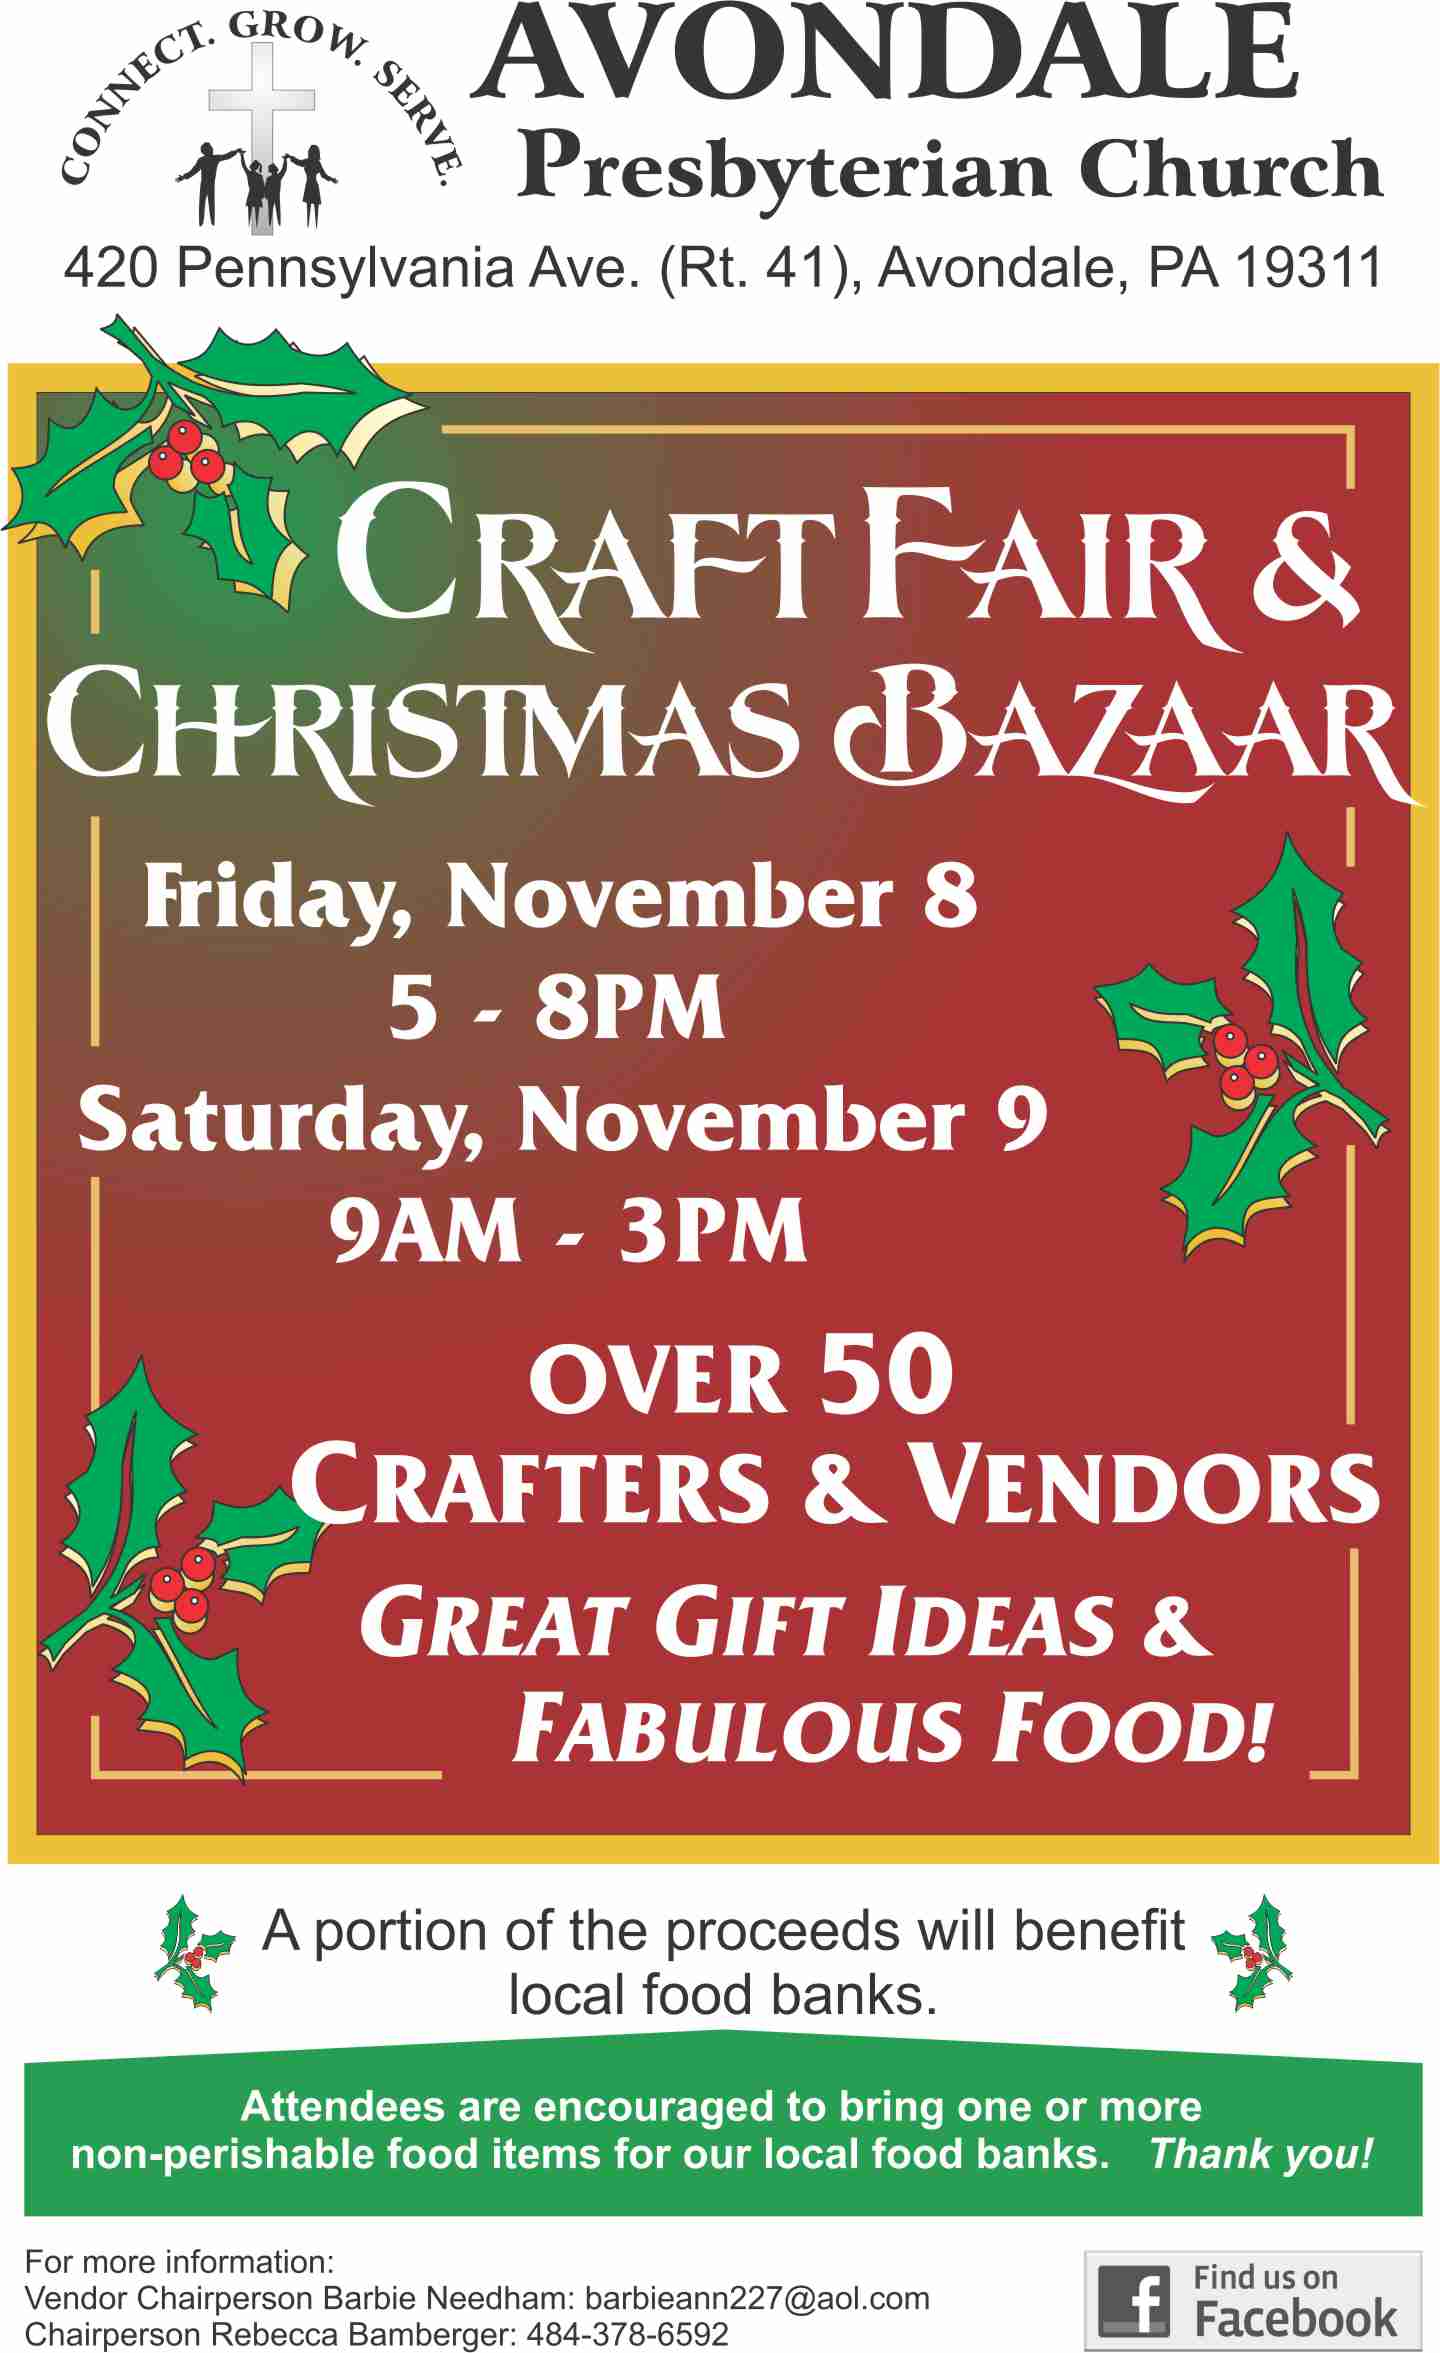 Avondale Presbyterian Church Craft Fair & Christmas Bazaar